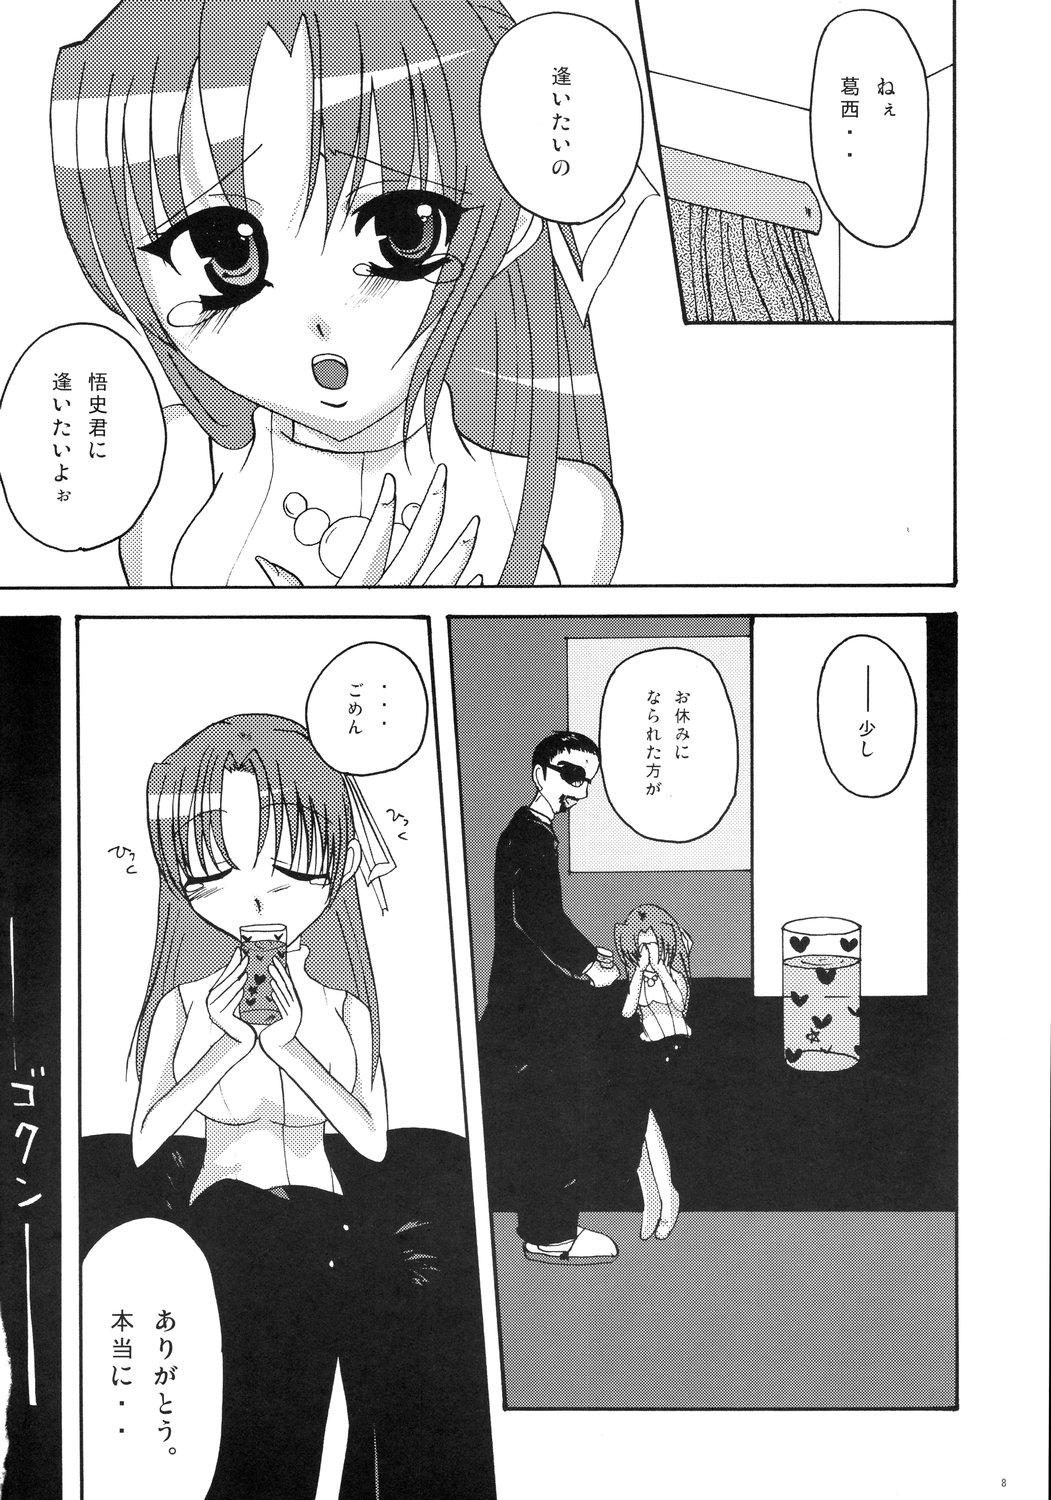 Punished Kiss Rock - Higurashi no naku koro ni Hungarian - Page 8